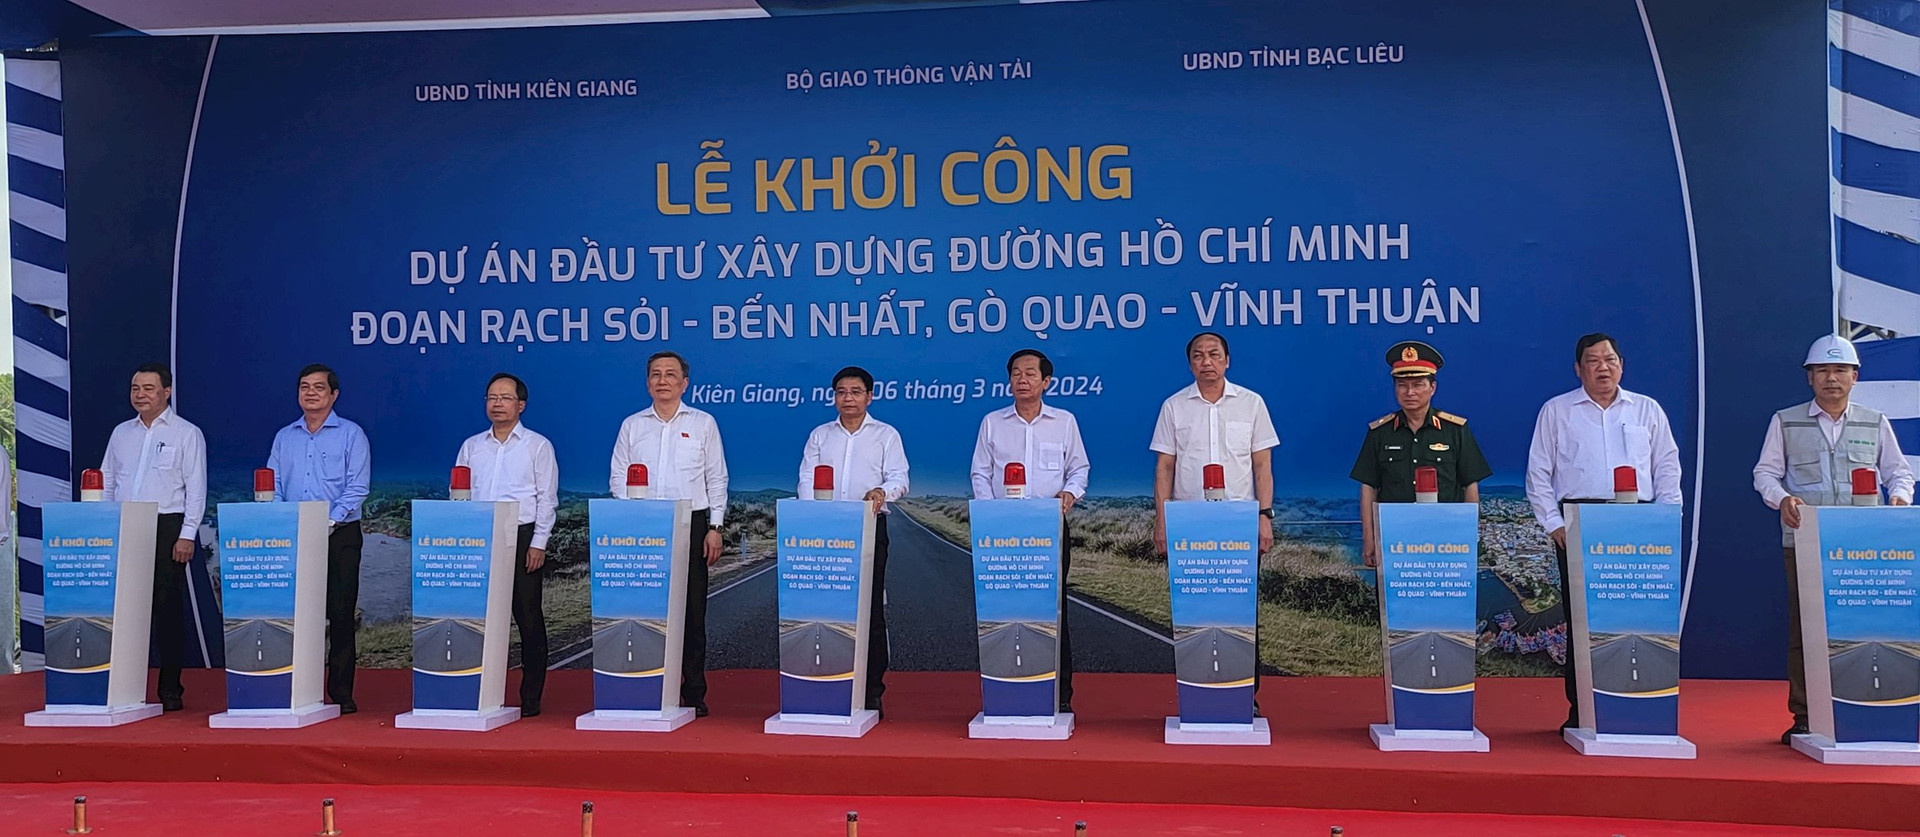 Khởi công đường hơn 3.900 tỷ đồng nối Kiên Giang và Bạc Liêu